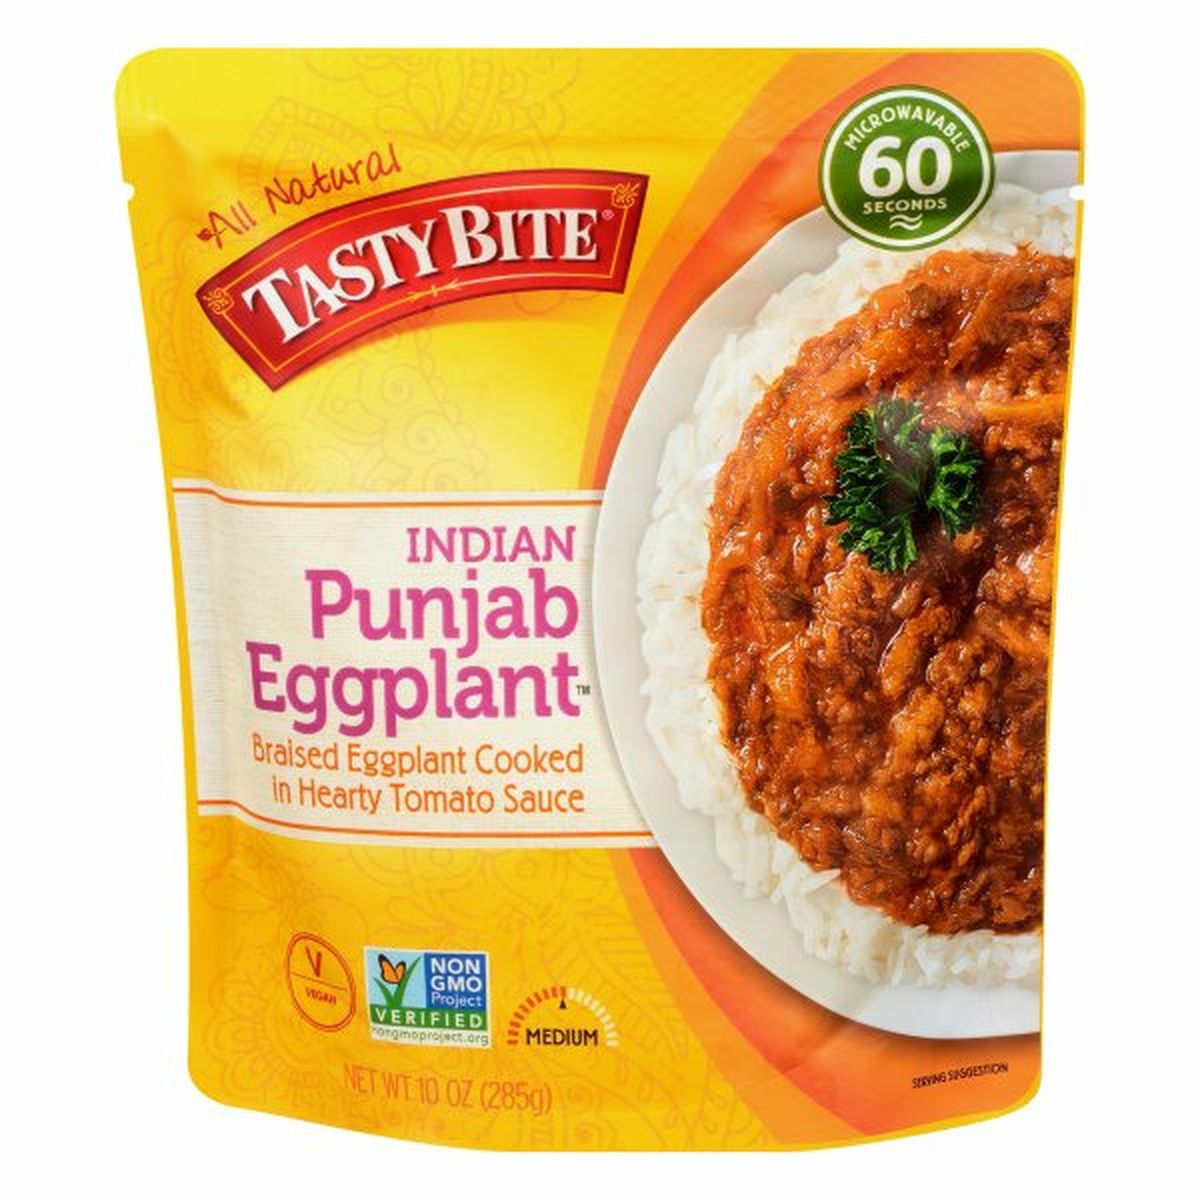 Calories in Tasty Bite Punjab Eggplant, Indian, Medium